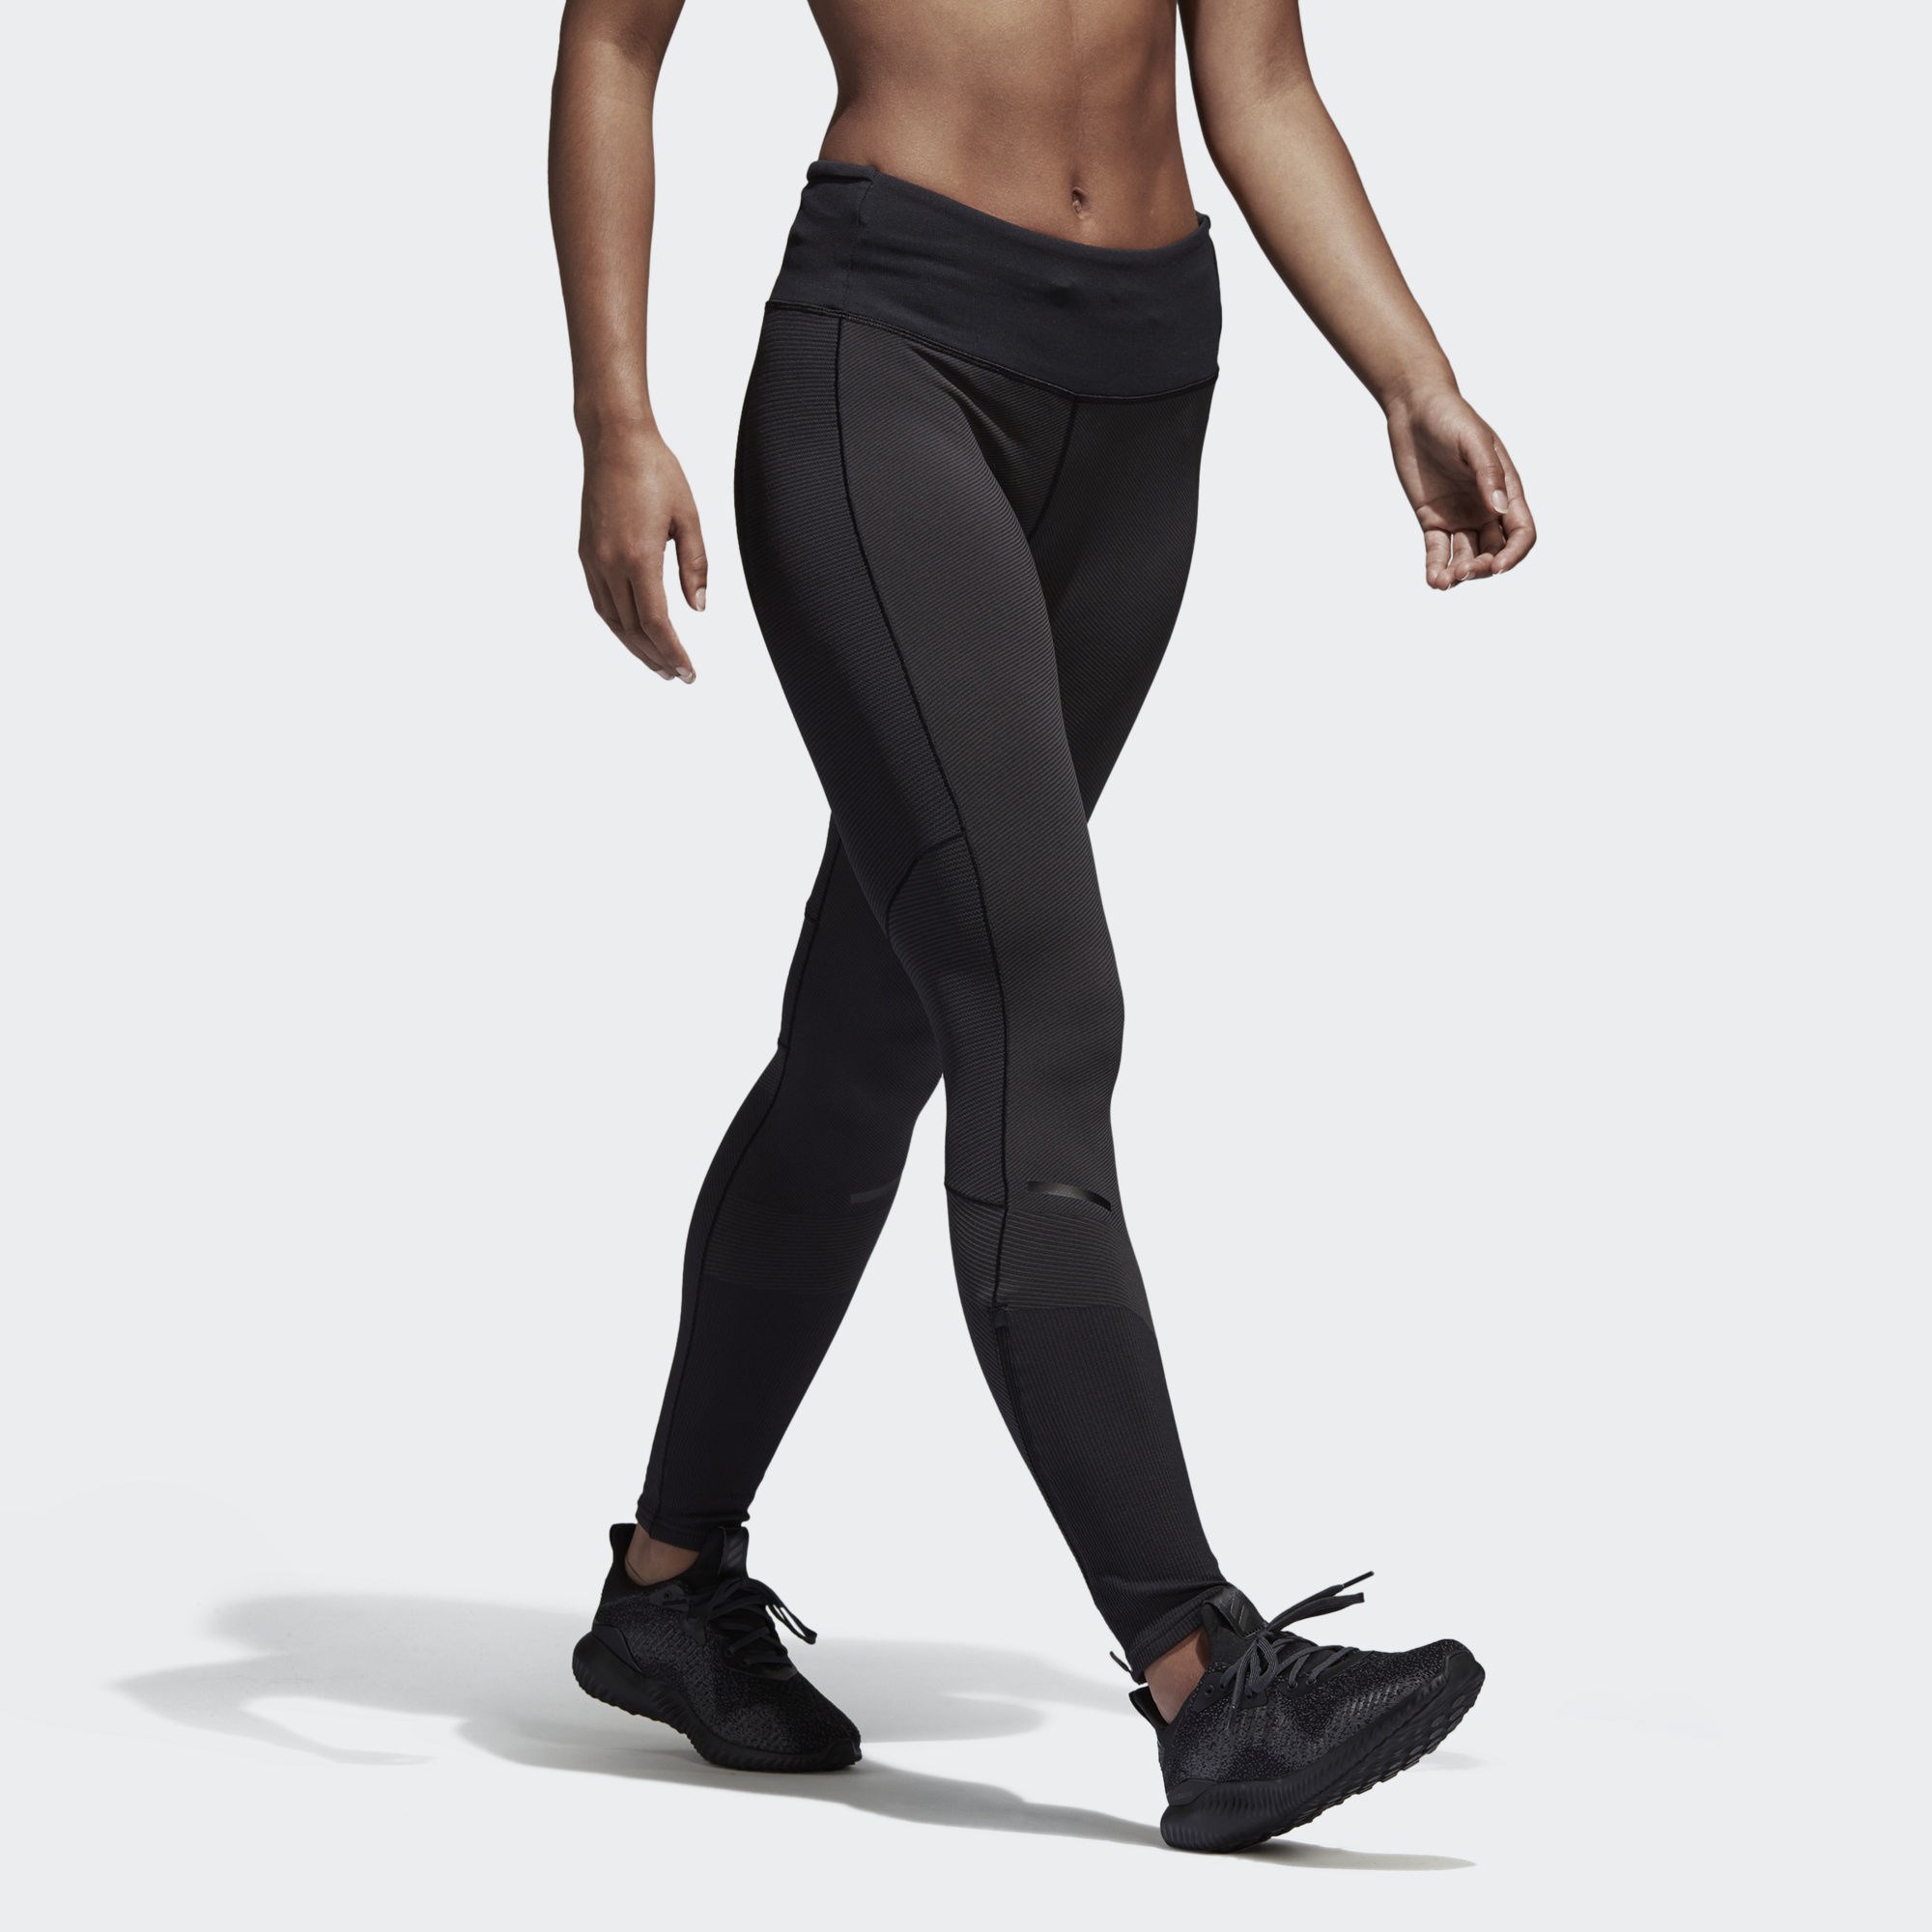 Лосины для бега. Бег черное. Adidas Running leggins fast Impact reflect Night.